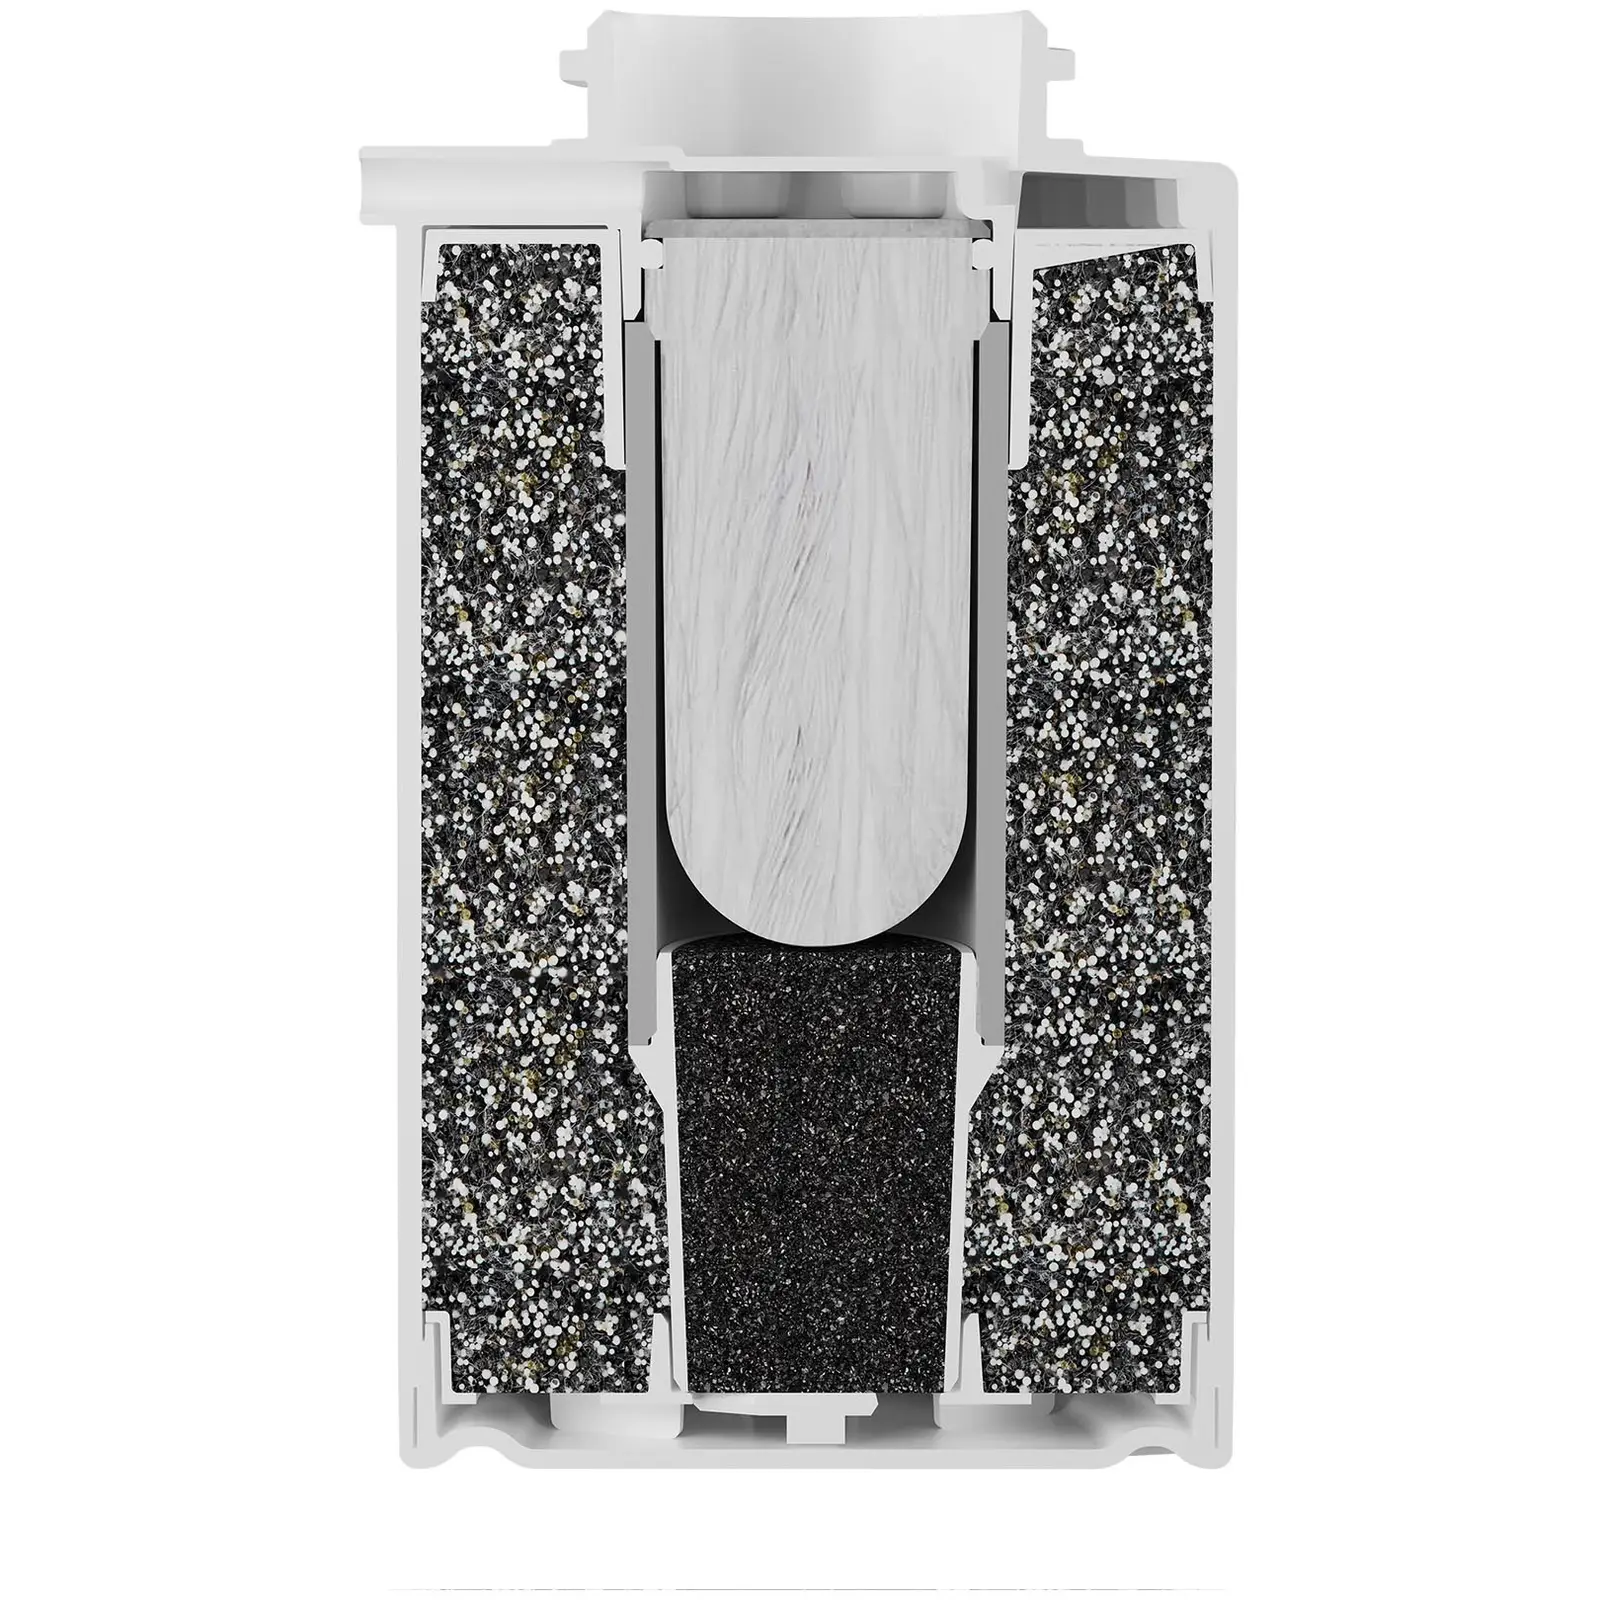 Náhradní filtrační kazeta pro AQUAPHOR stolní filtr na vodu